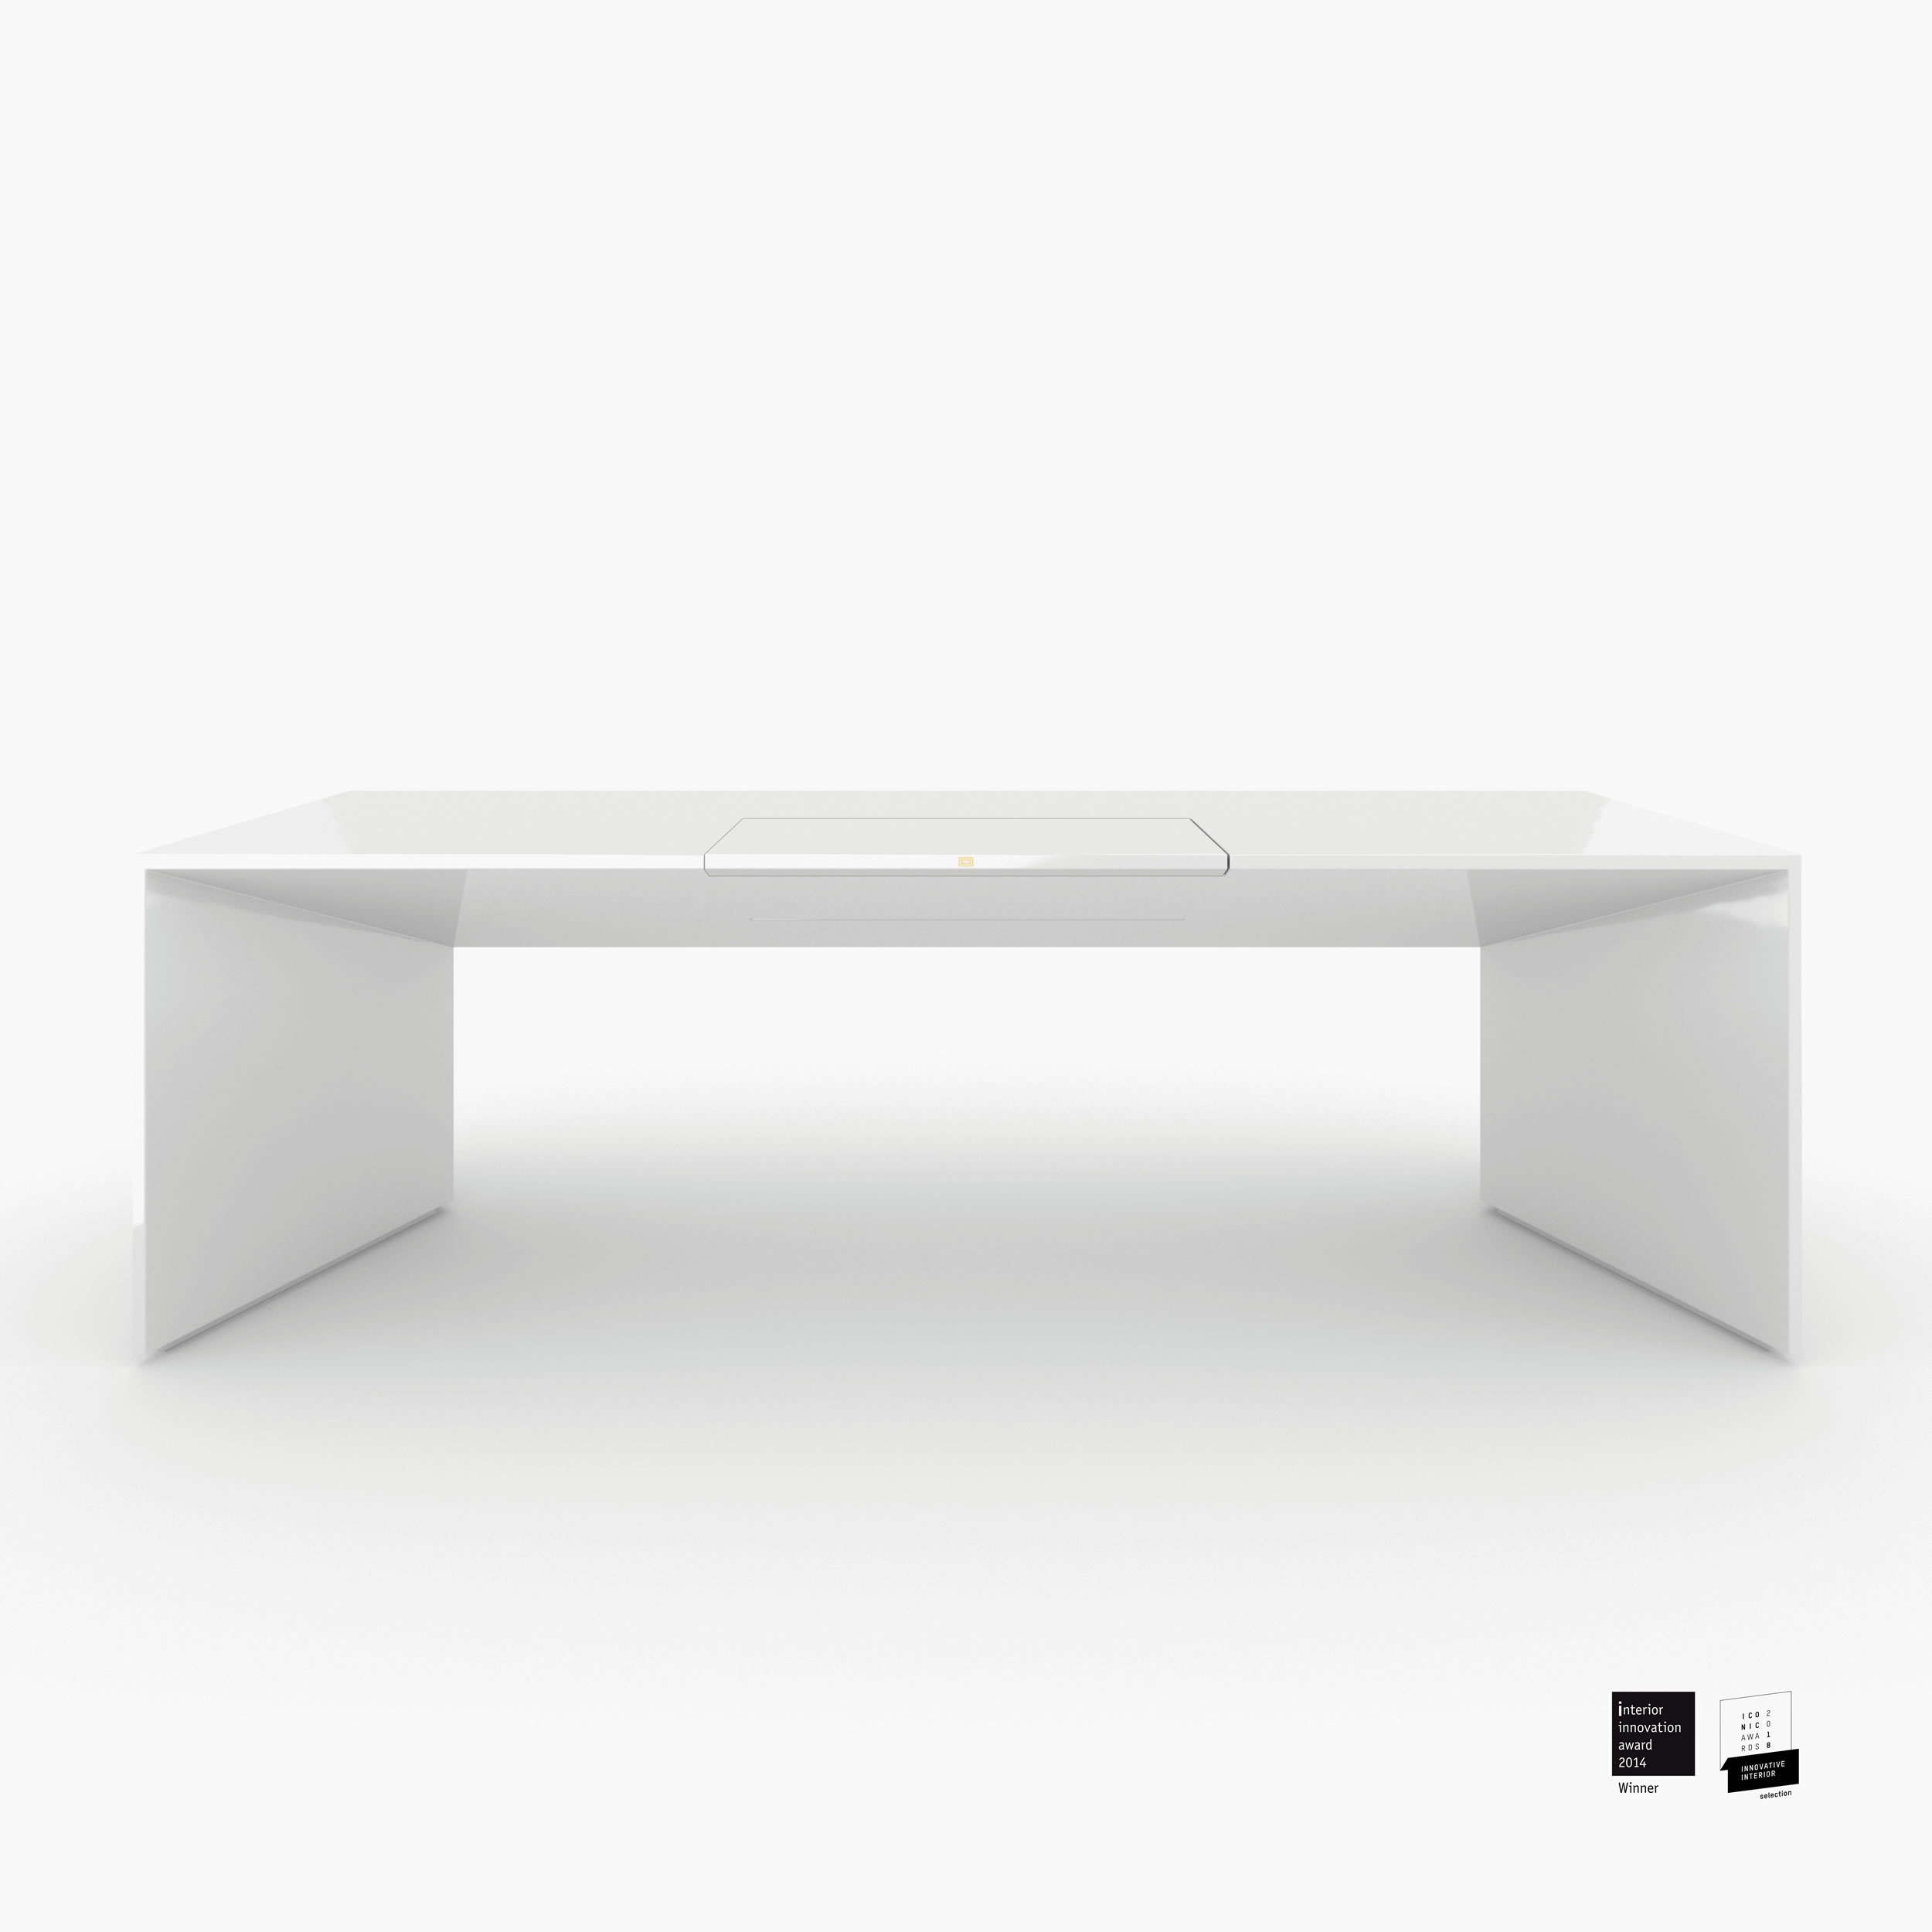 Schreibtischig weiss all white Chefzimmer art furniture Schreibtische FS 89 FELIX SCHWAKE